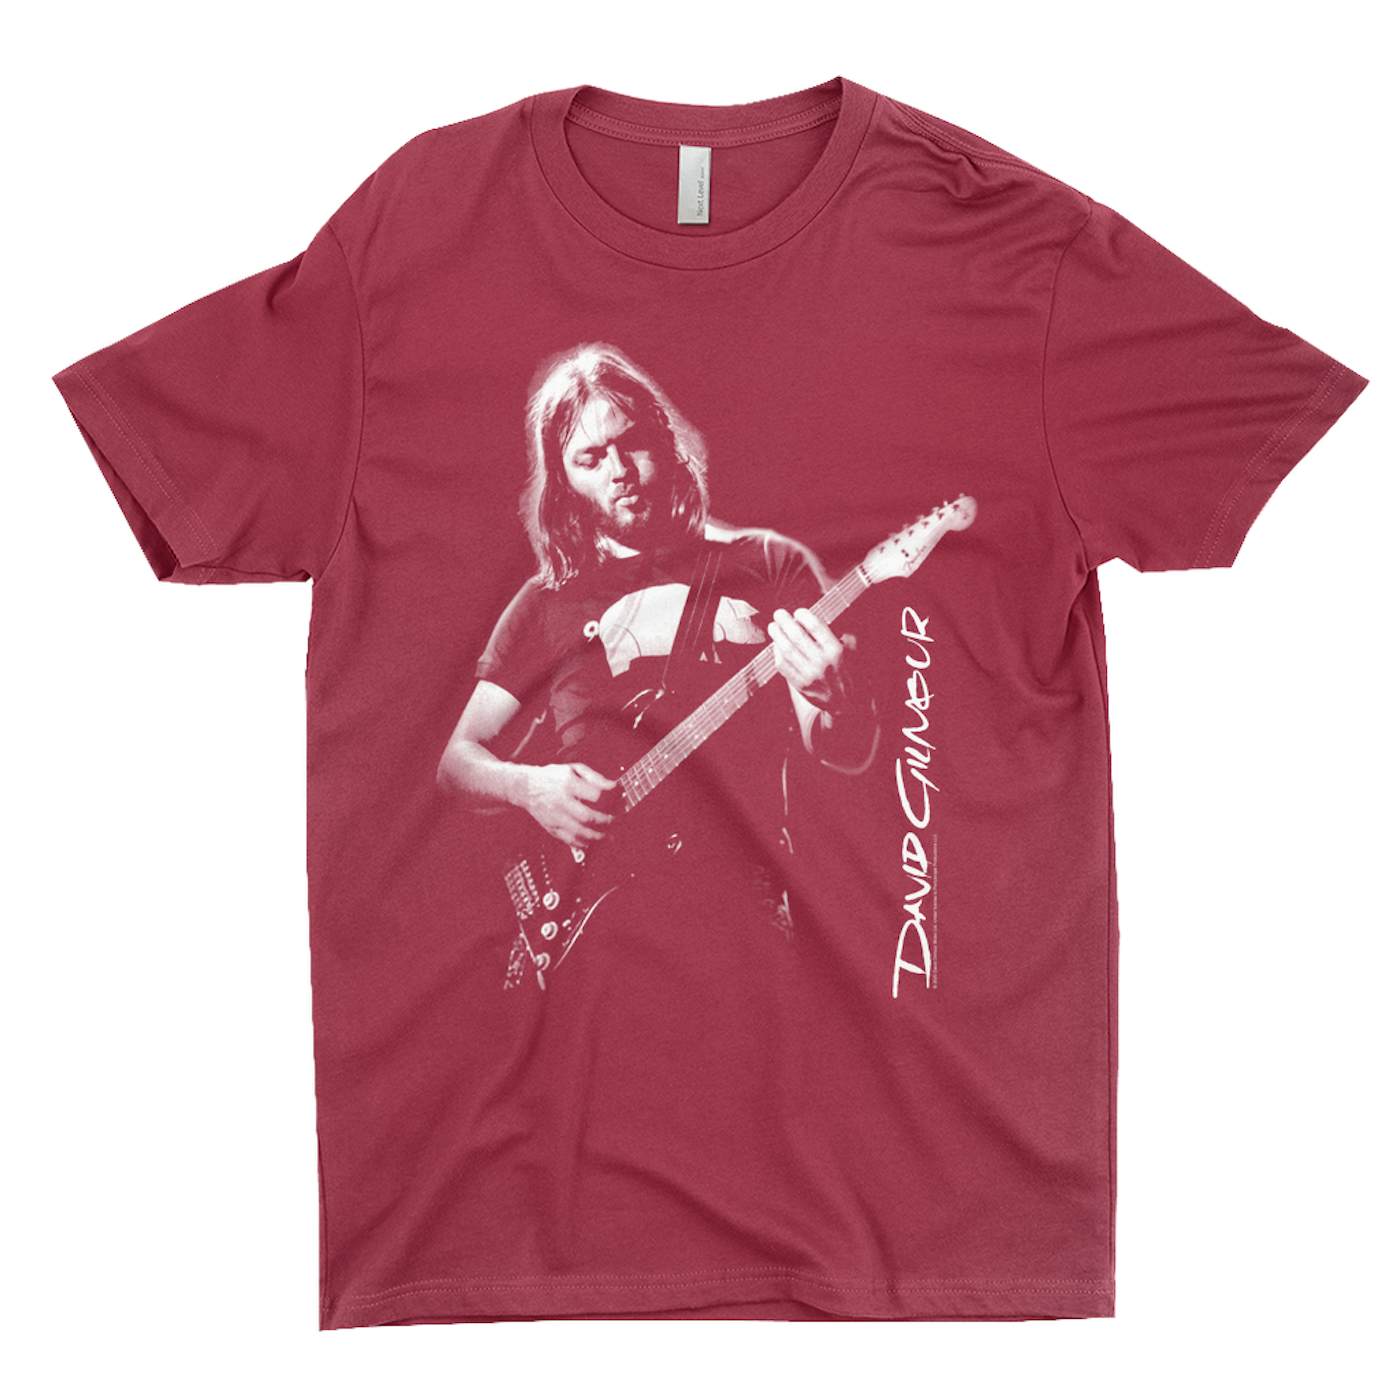 David Gilmour T-Shirt | Young David Gilmour Of Pink Floyd David Gilmour Shirt